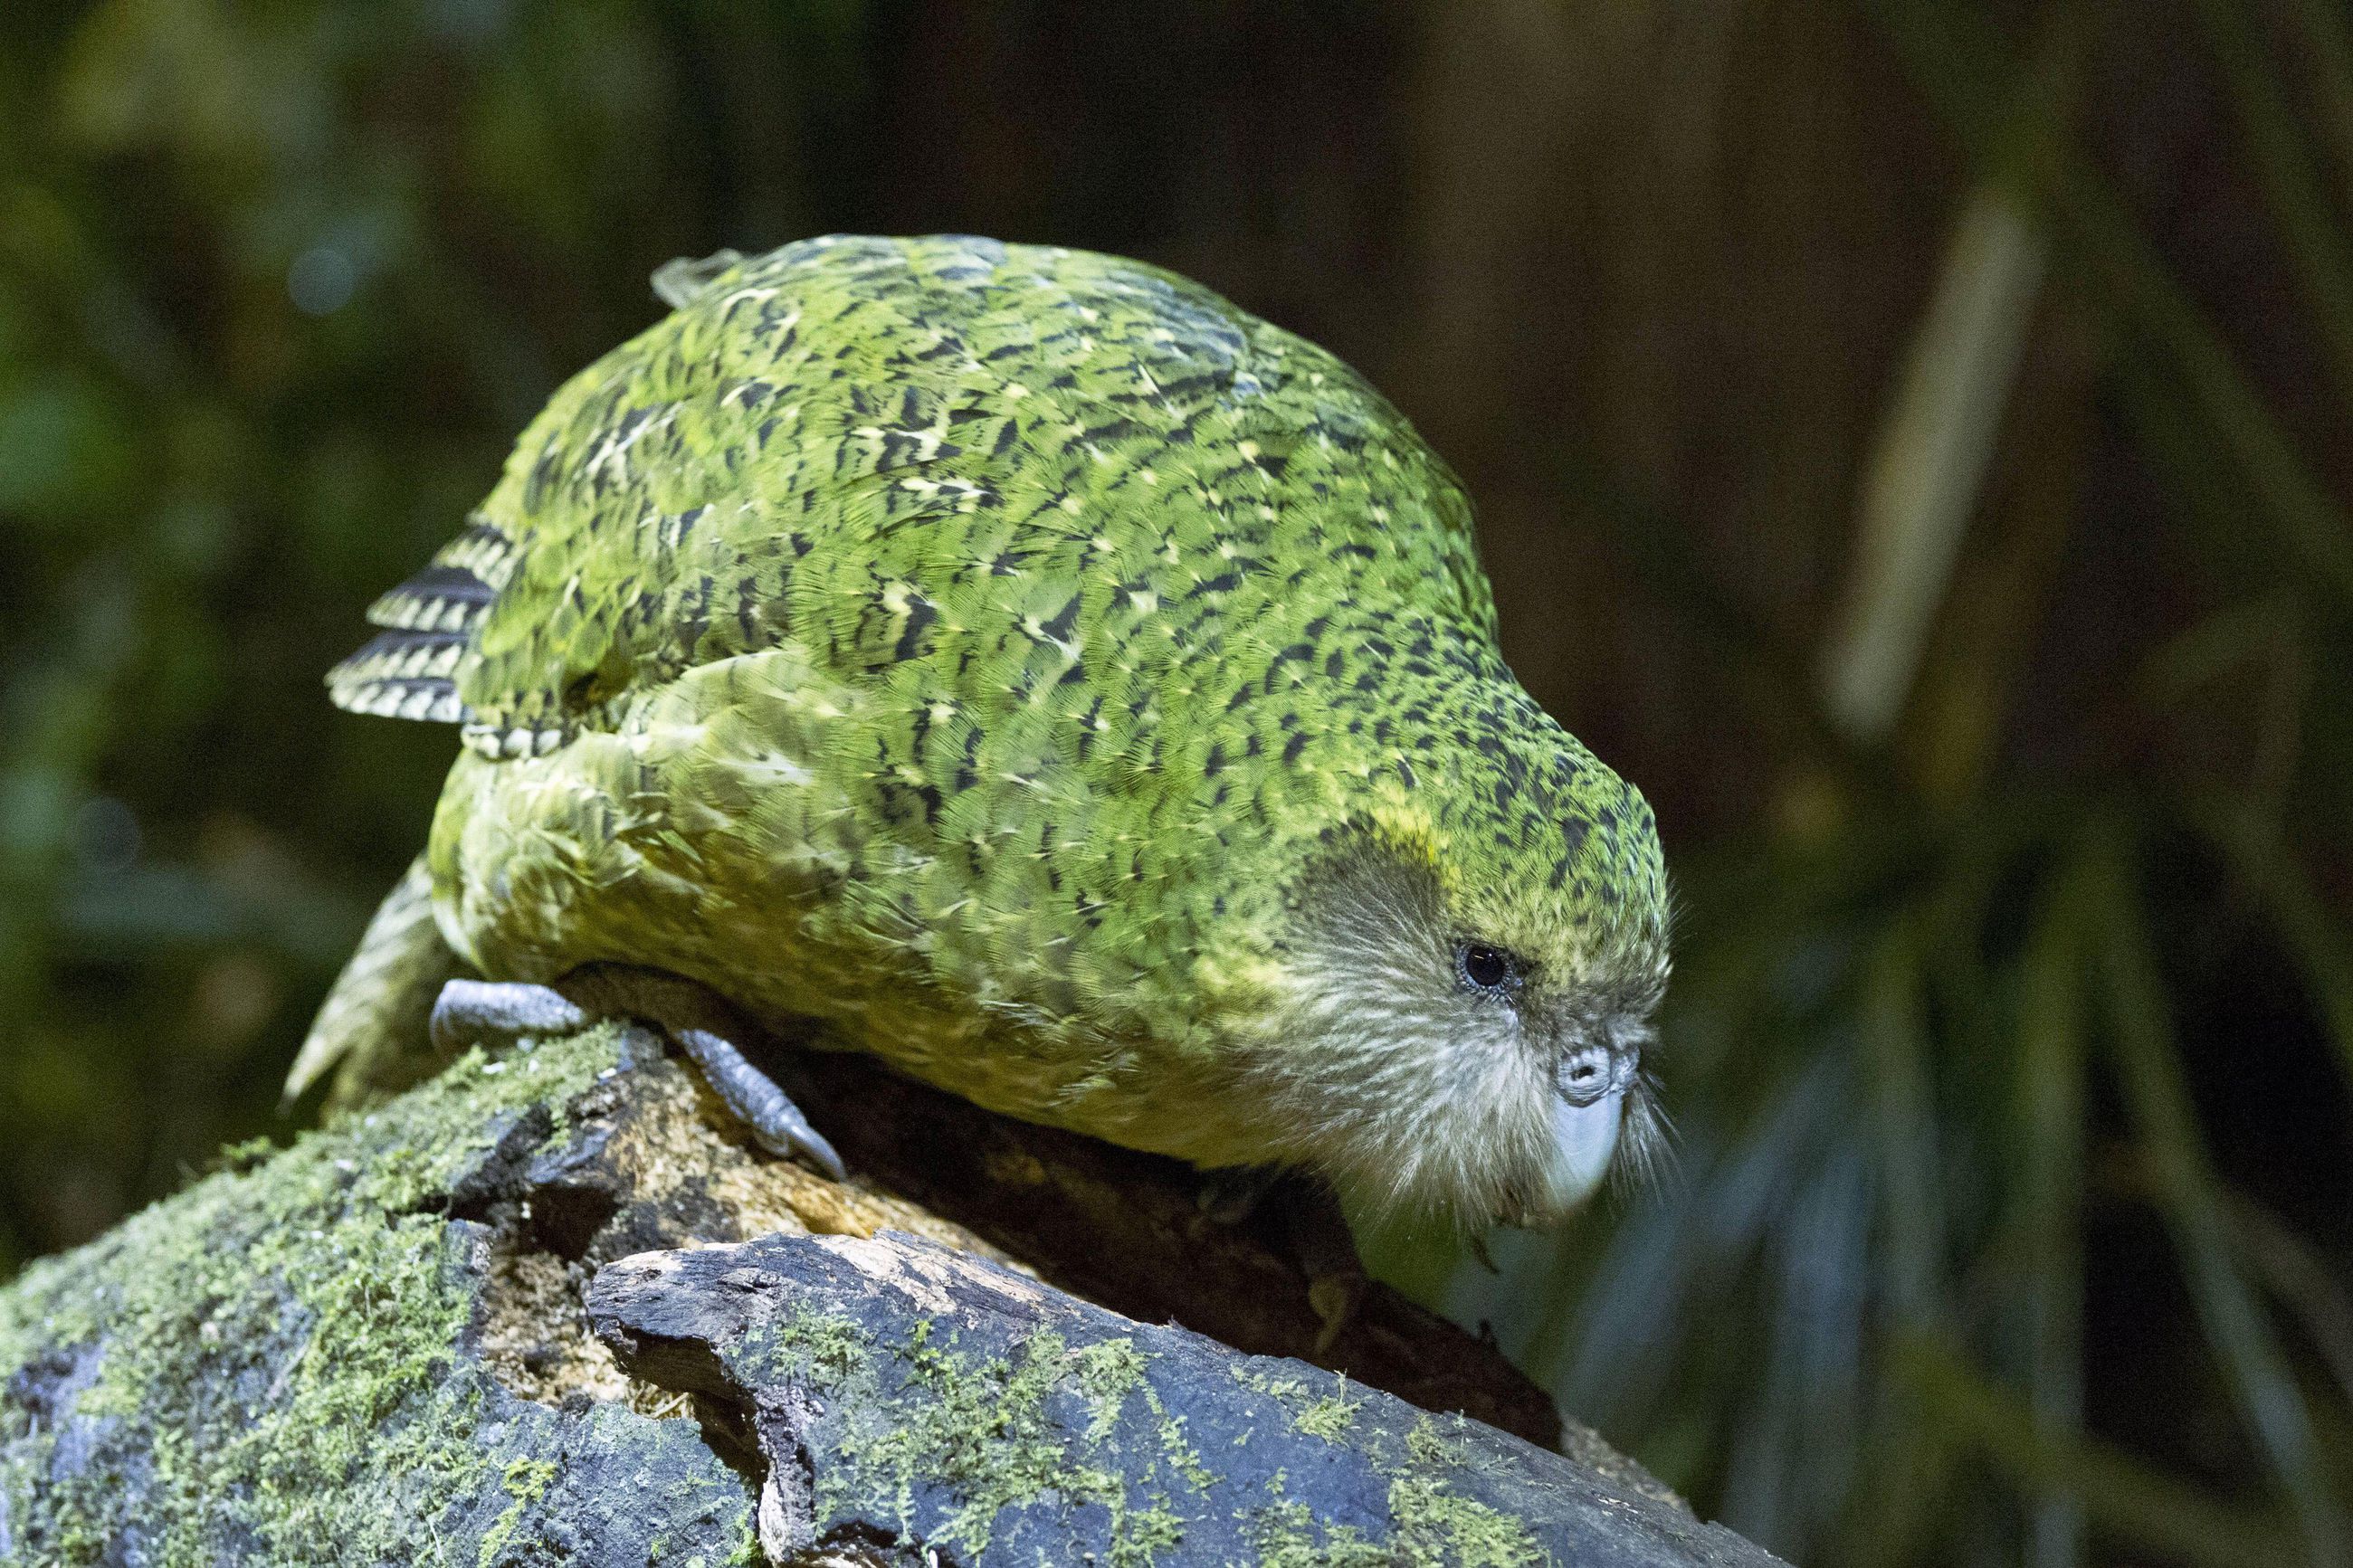 Maailman uhanalaisimpiin kuuluva Uuden-Seelannin kakapo-papukaija sai  ennätysmäärän poikasia | Kaleva